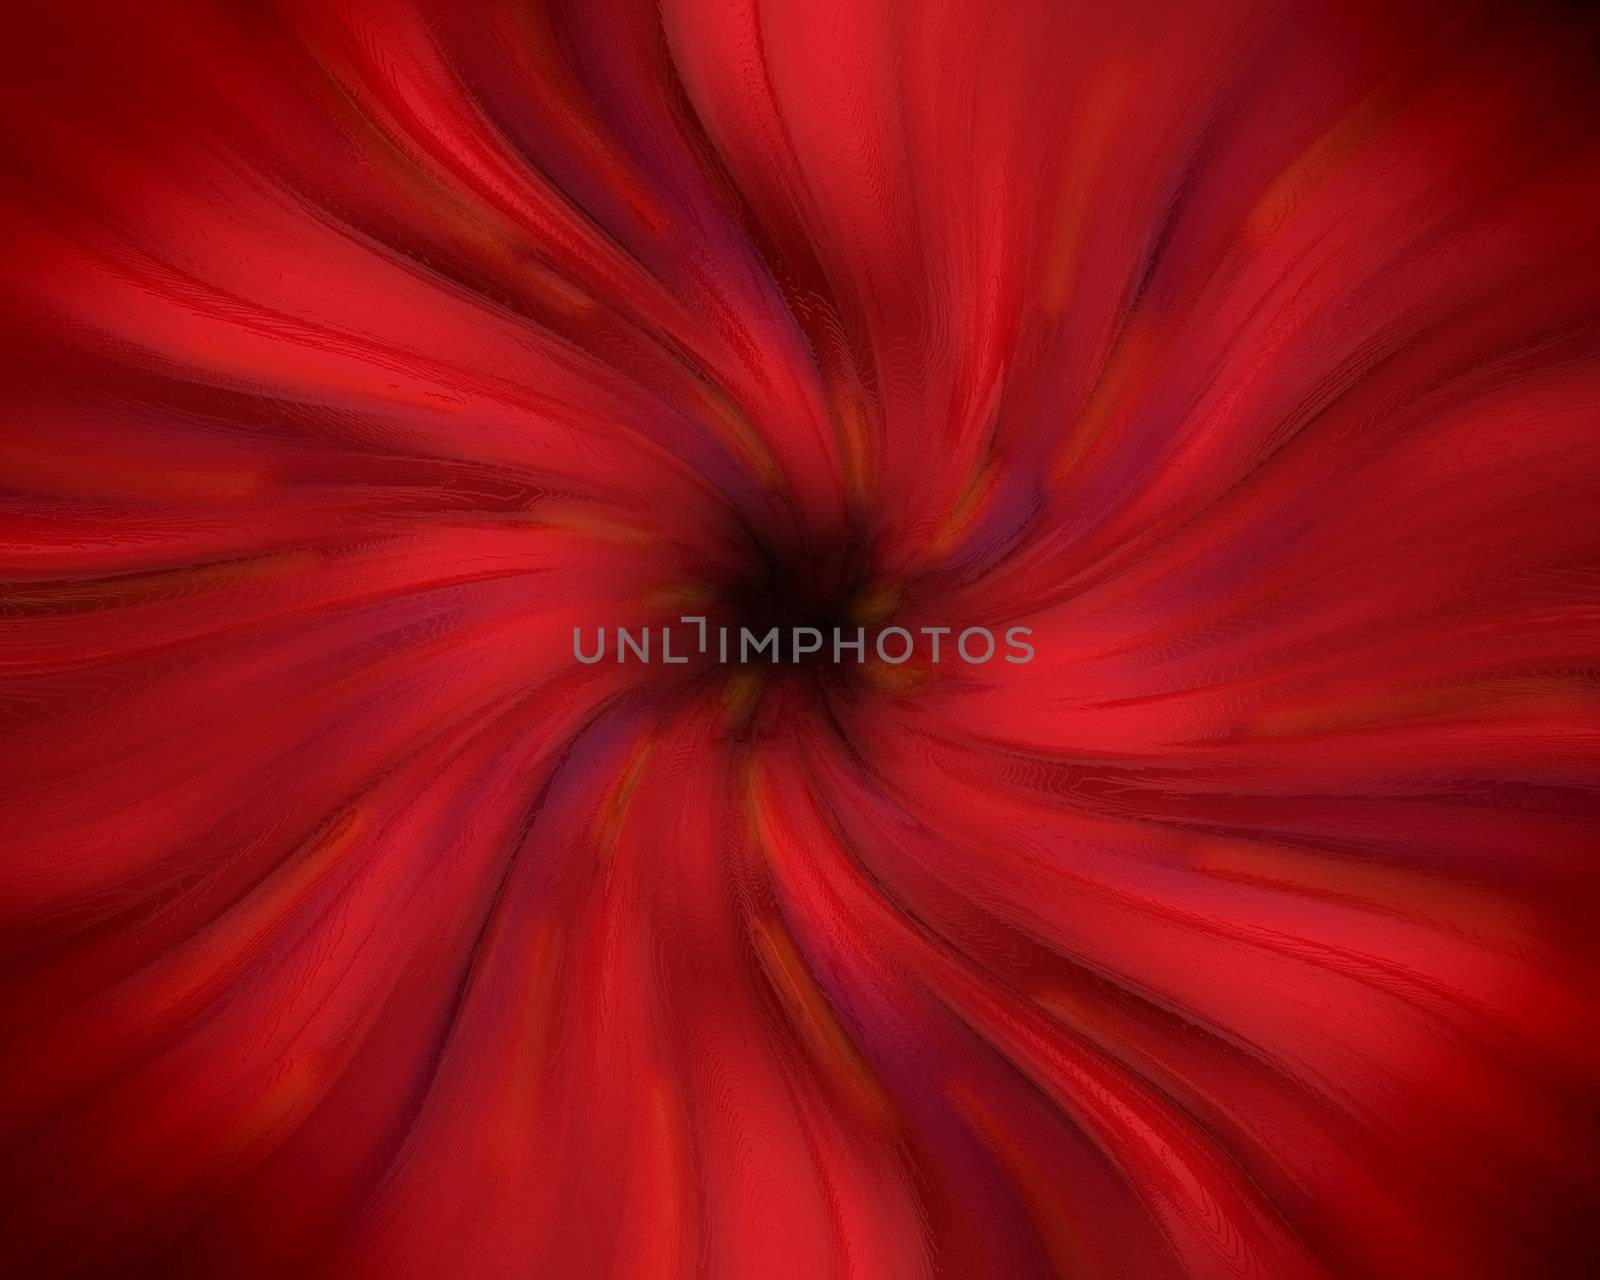 Red swirling pastel vortex with dark center